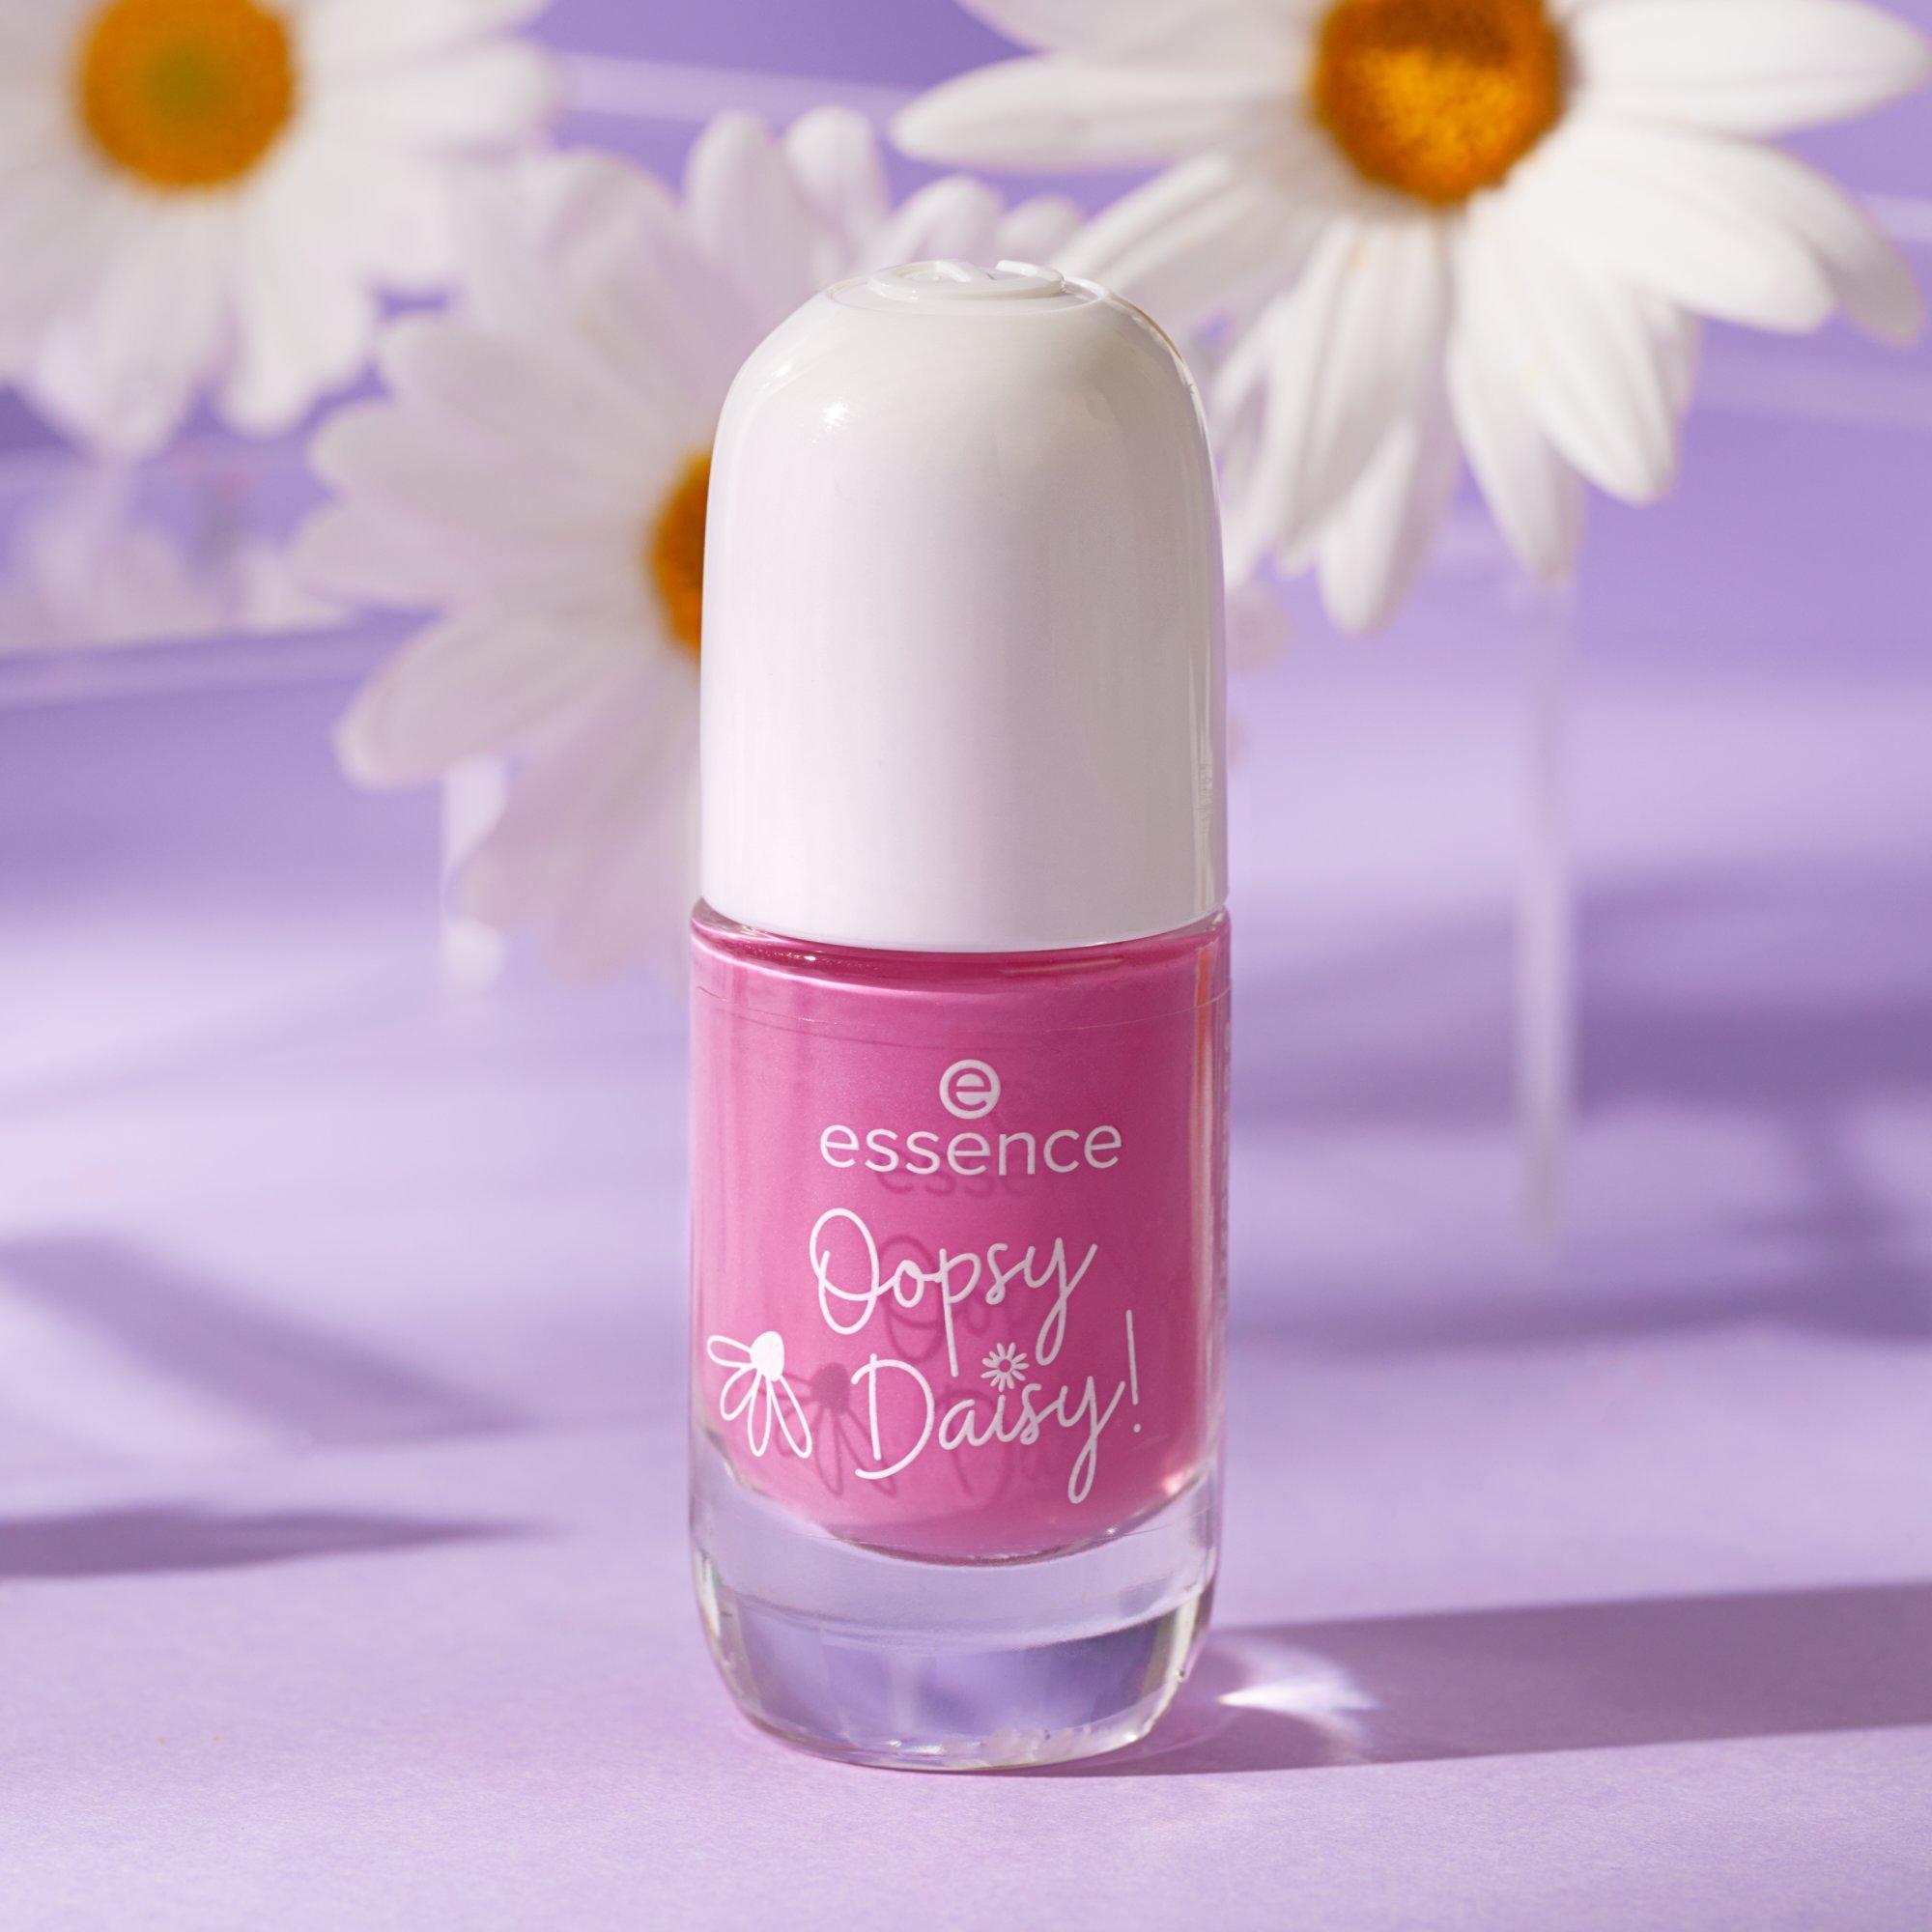 Oh happy daisy! gel nail colour